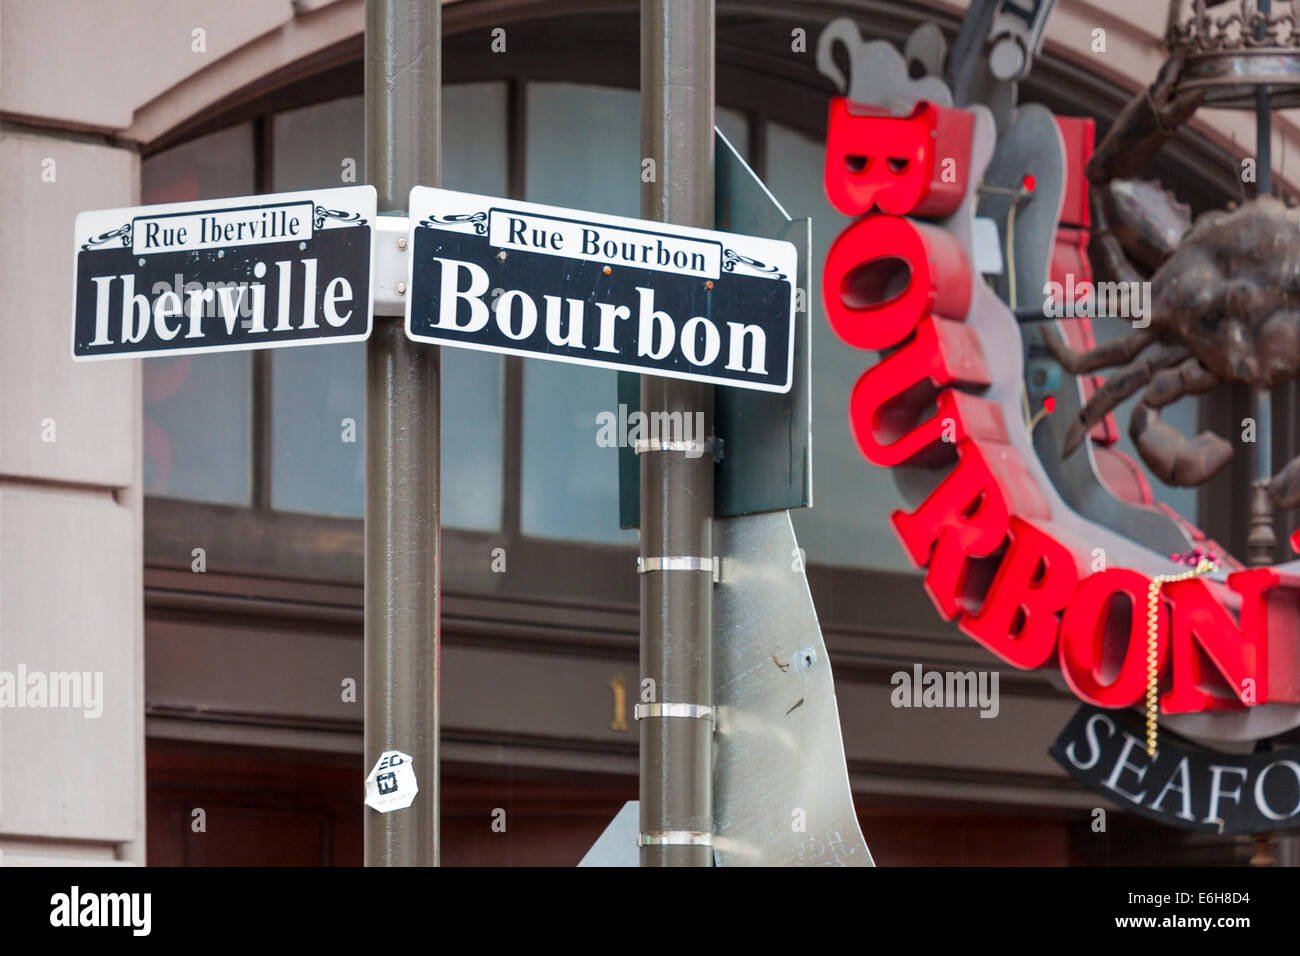 Les plaques de rue à l'angle de l'Iberville et Bourbon Street dans le quartier français de La Nouvelle-Orléans Banque D'Images